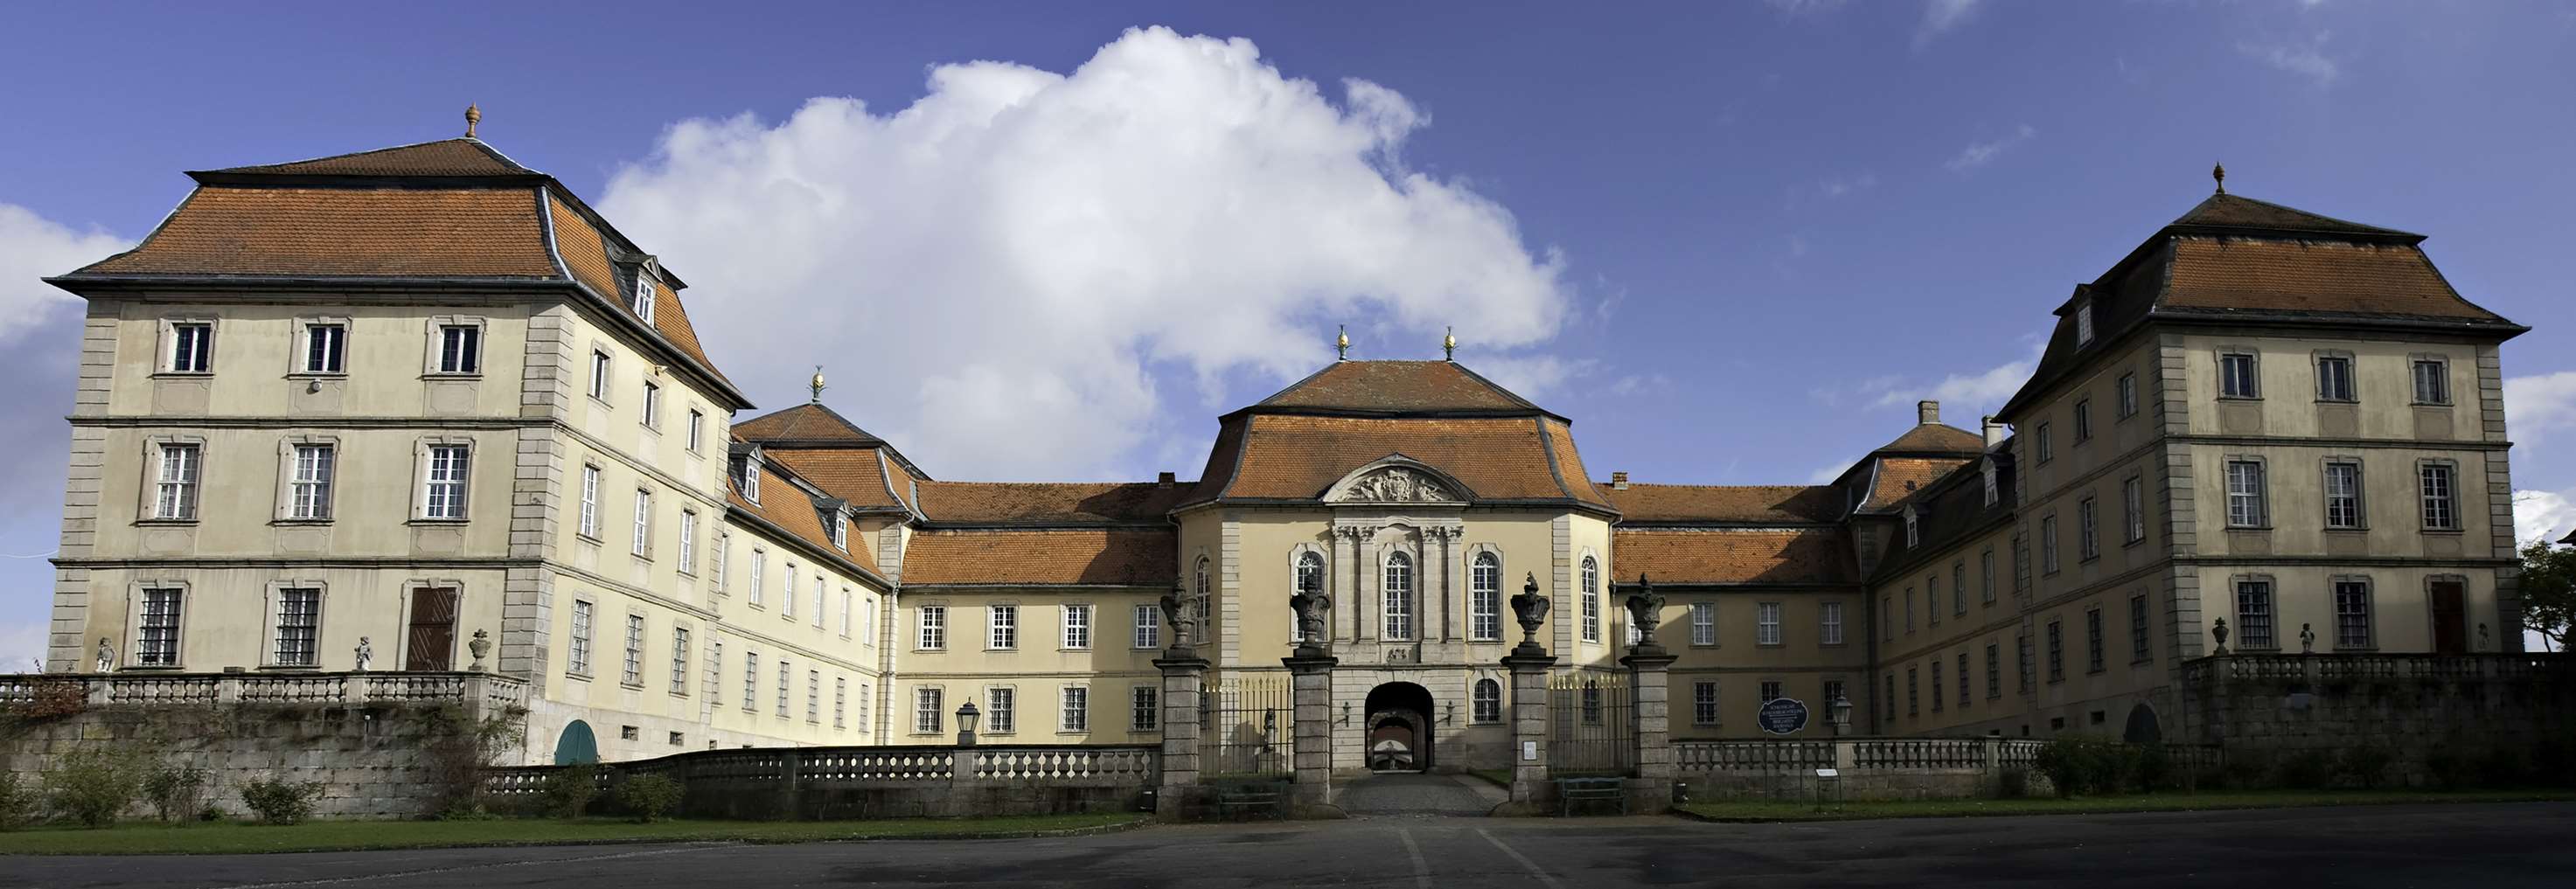 Otterbein Kalksysteme für die Denkmalpflege, Referenz Schloss Fasanerie